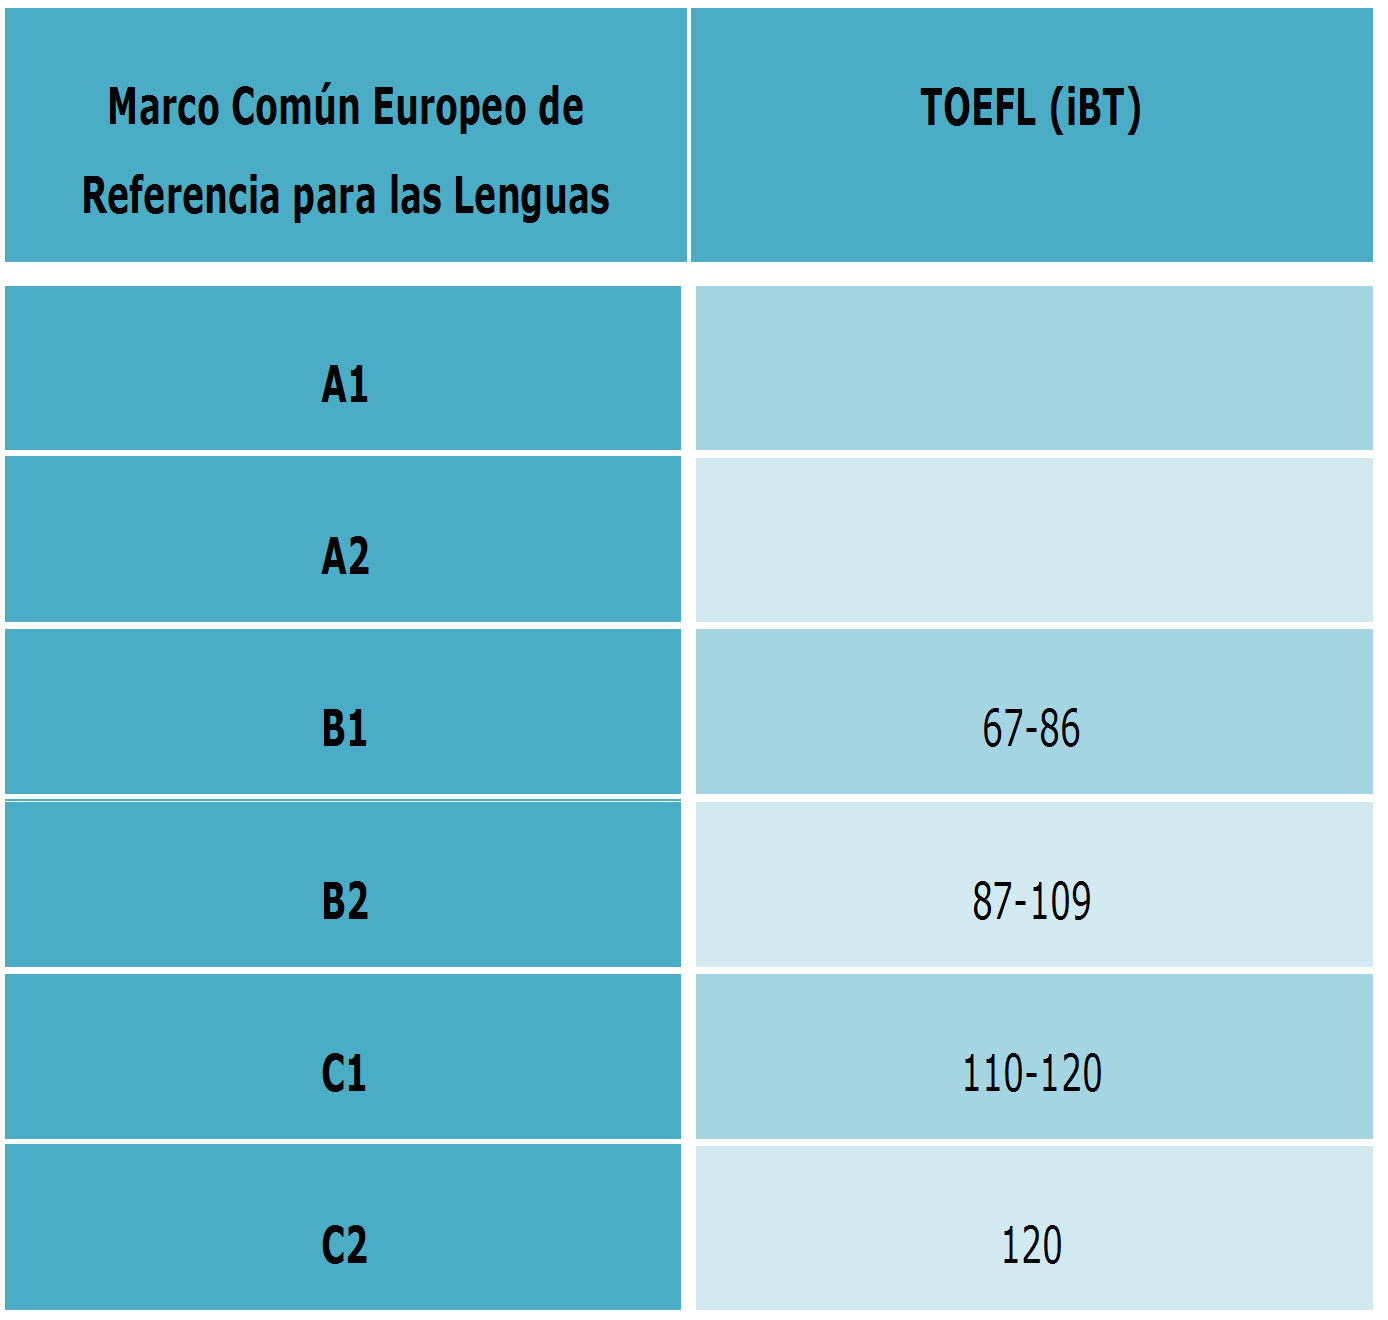 Correspondencia Marco común europeo de referencia para las lenguas y puntuación TOEFL